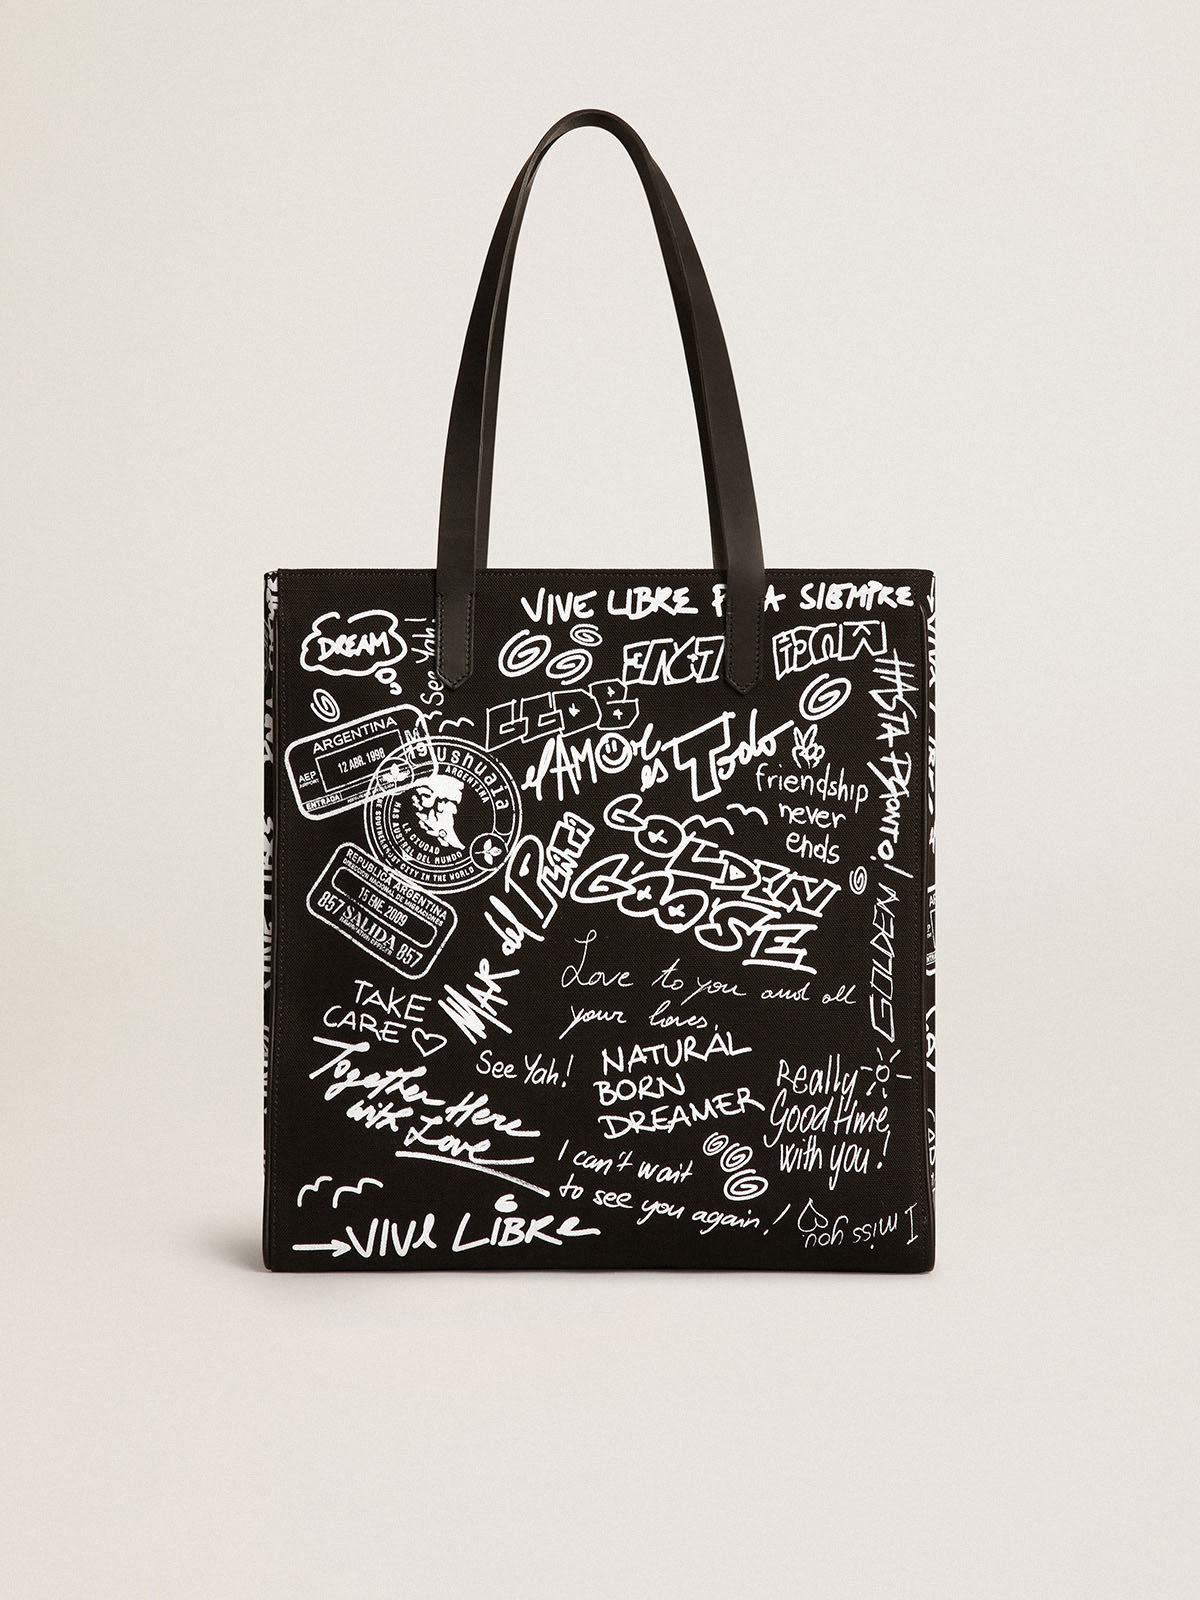 Golden Goose - Borsa California Bag North-South di colore nero con stampa graffiti bianca a contrasto in 